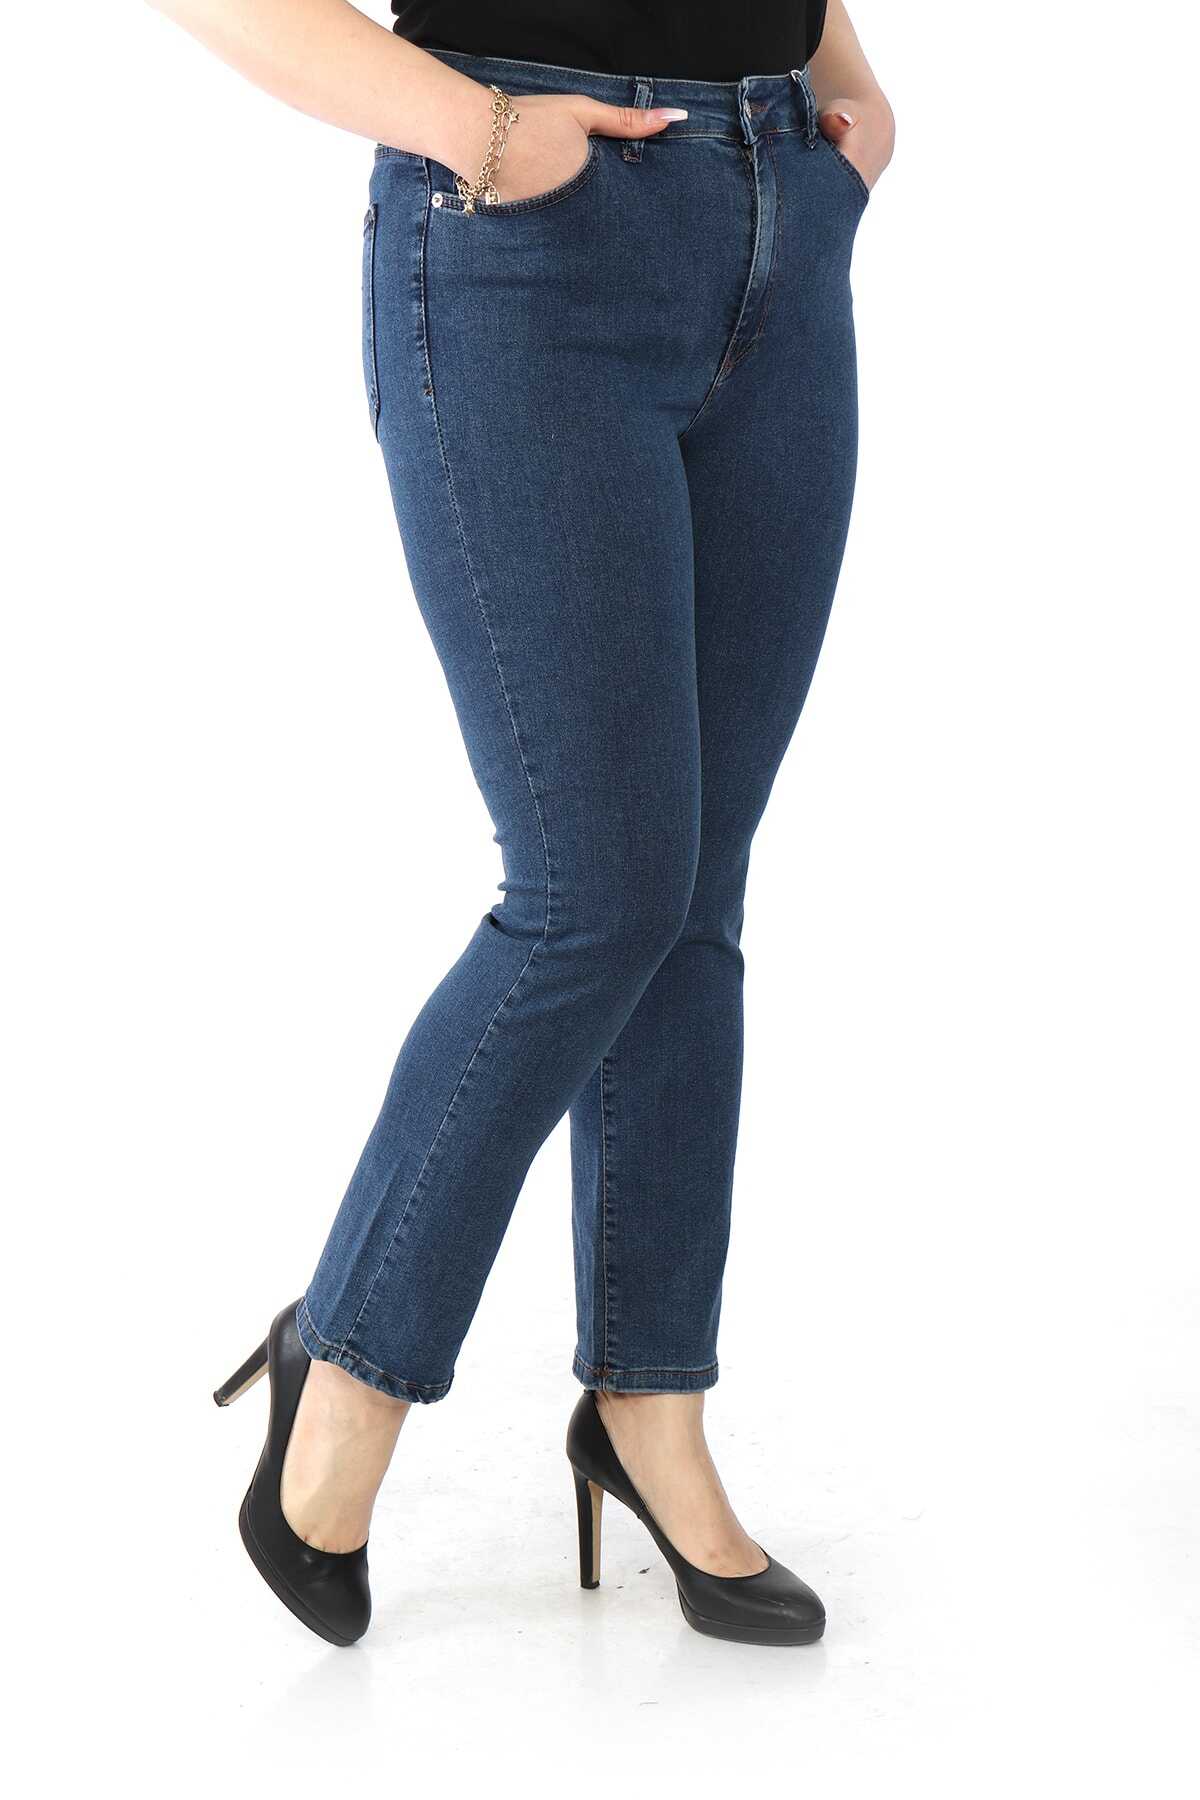 شلوار جین راسته فاق بلند سایز بزرگ زنانه آبی تیره برند Heves Giyim